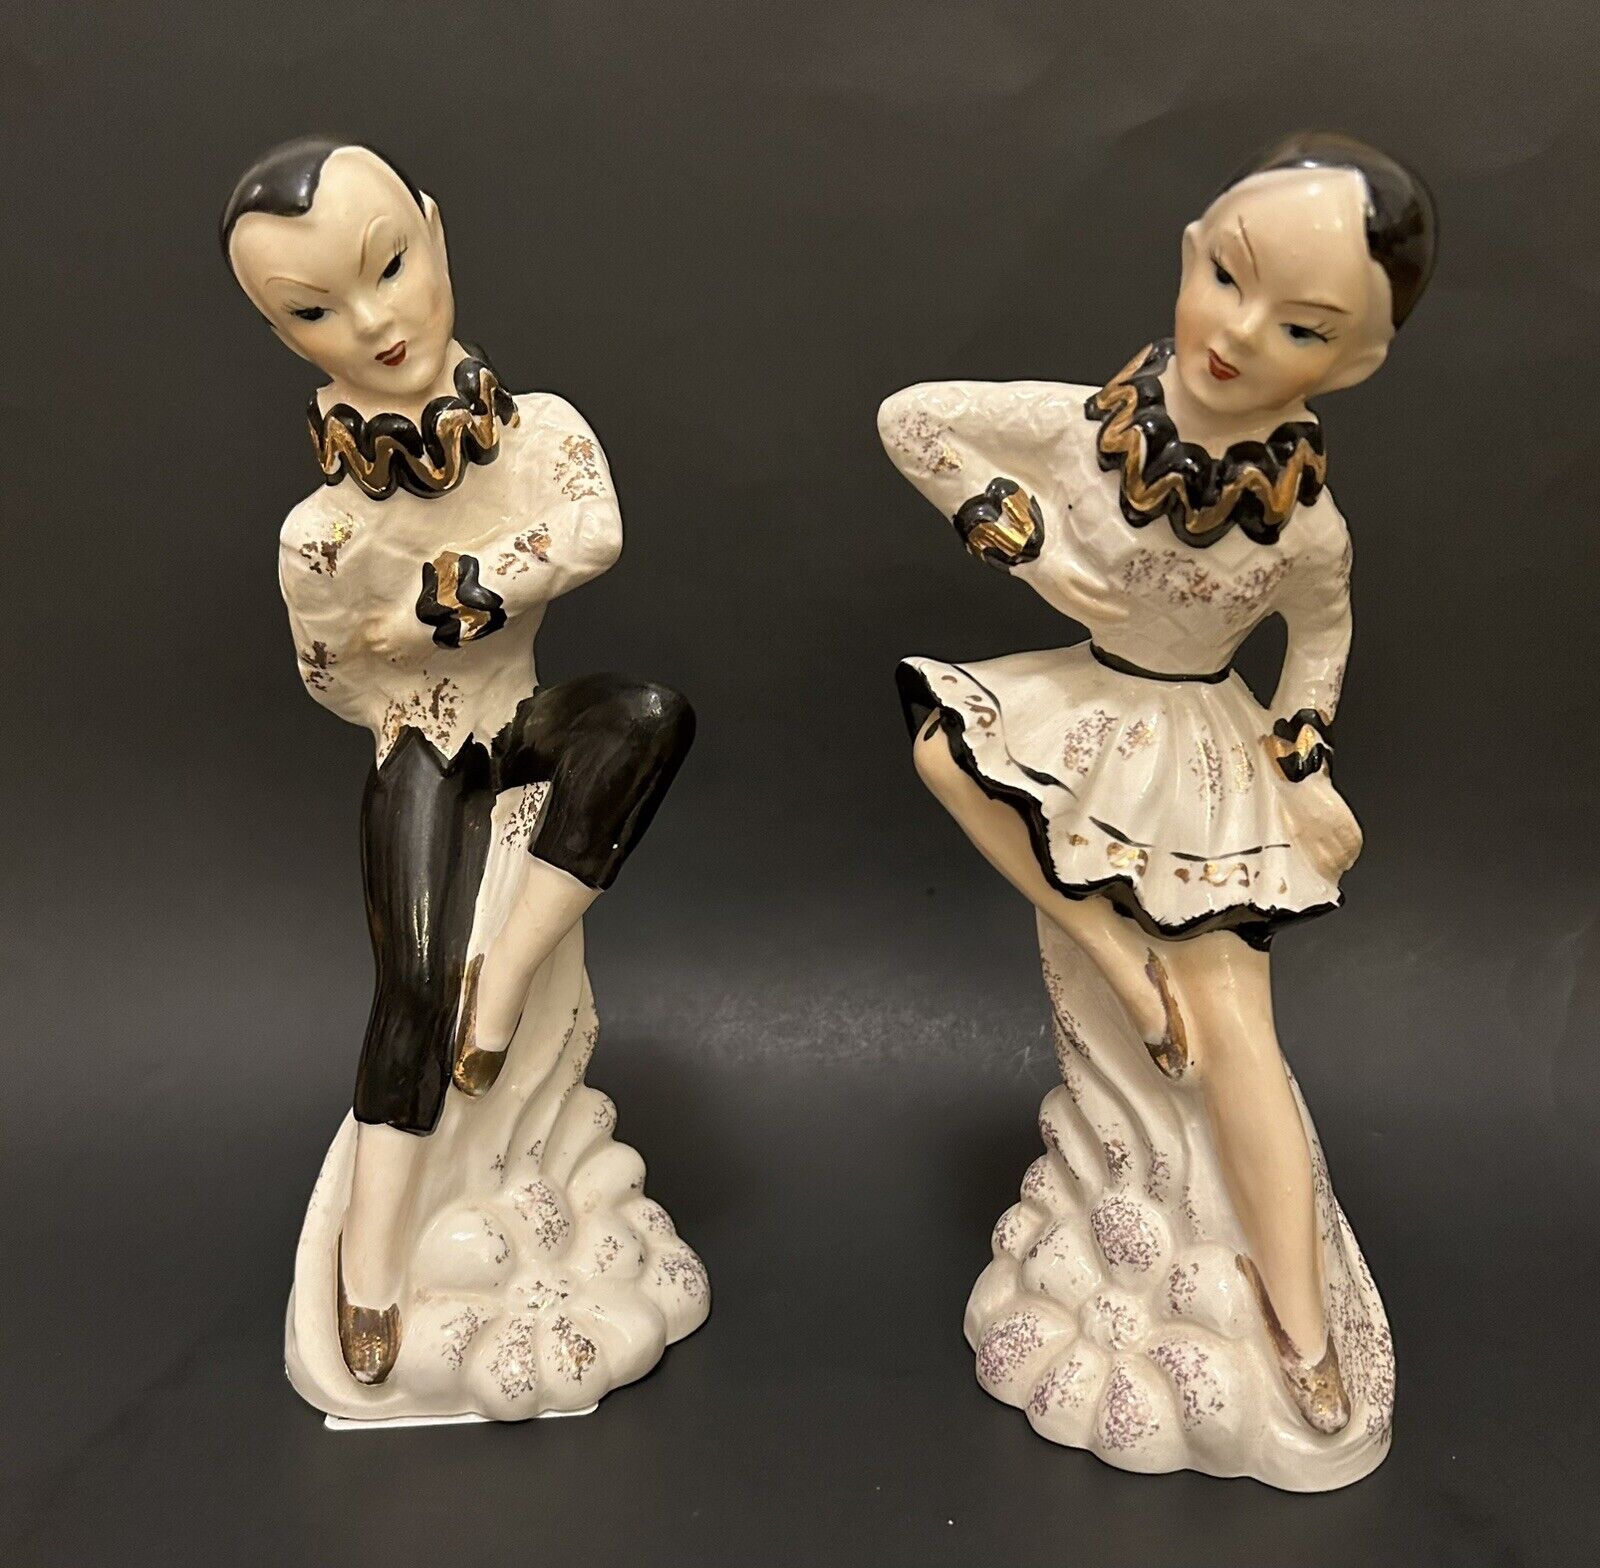 Vtg Harlequin Dancers Figurine 1940-1950s Porcelain 9”H